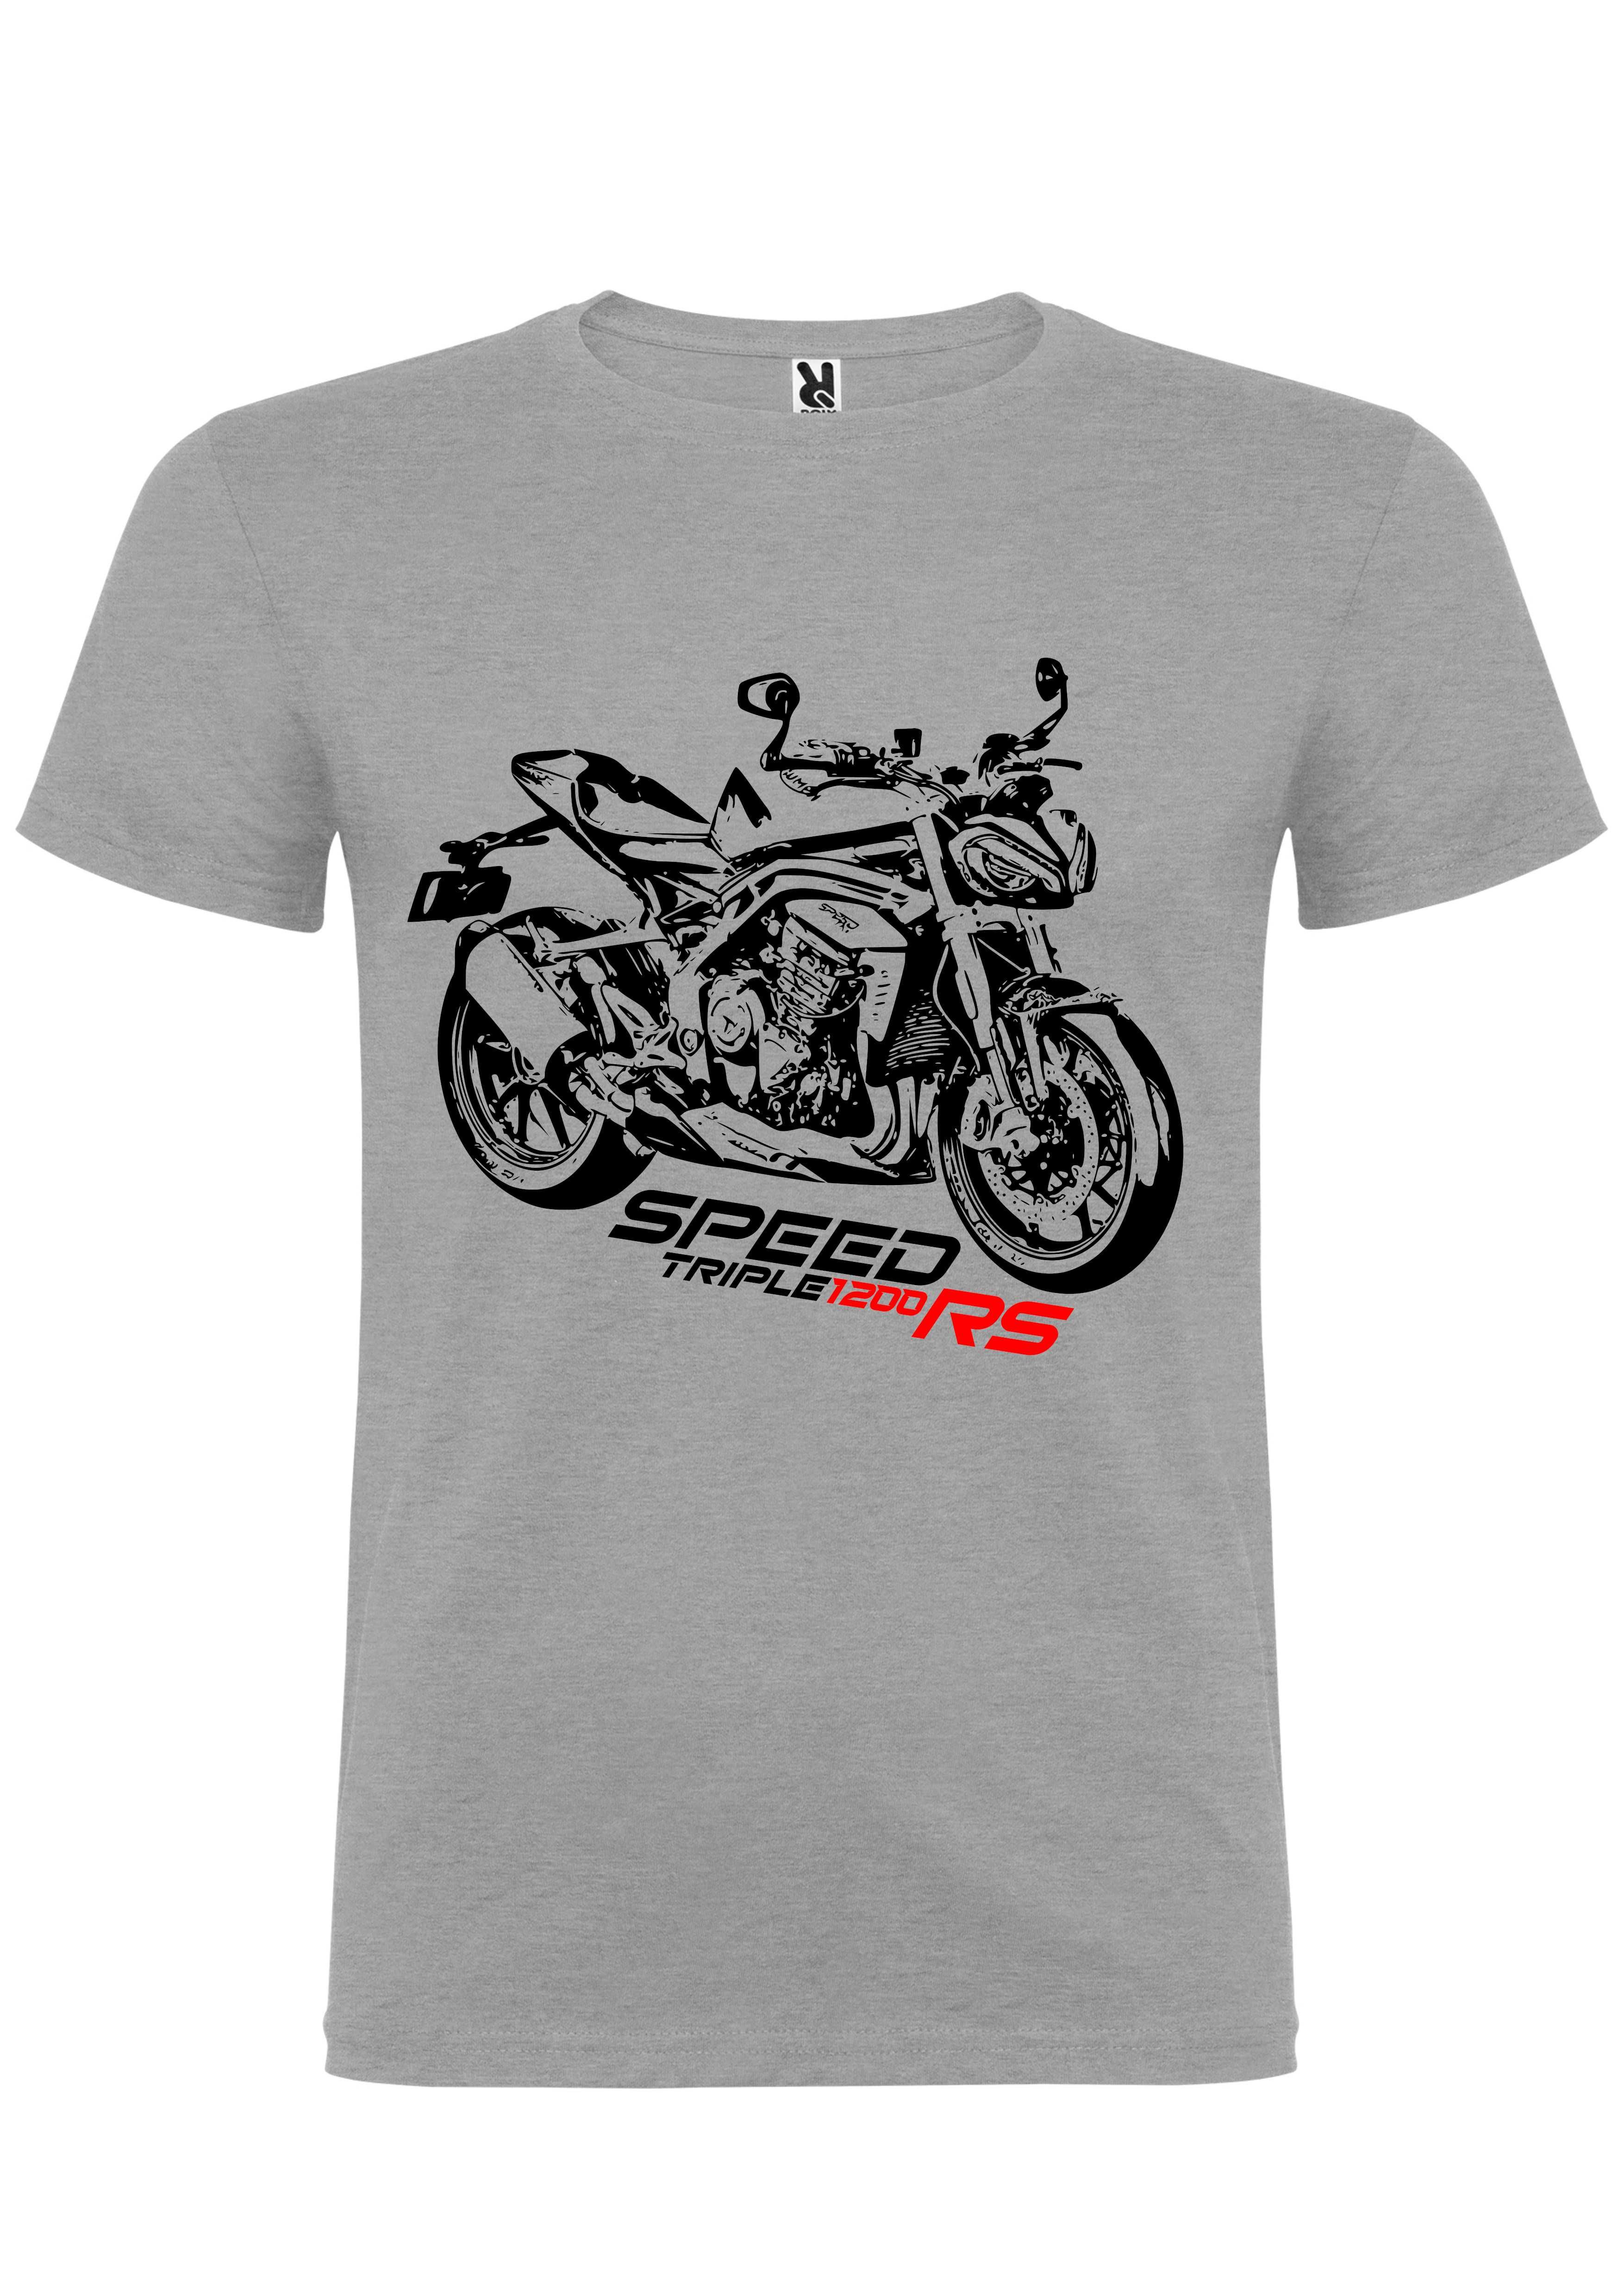 T-shirt Triumph Speed Triple 1200 Rs Sinueta